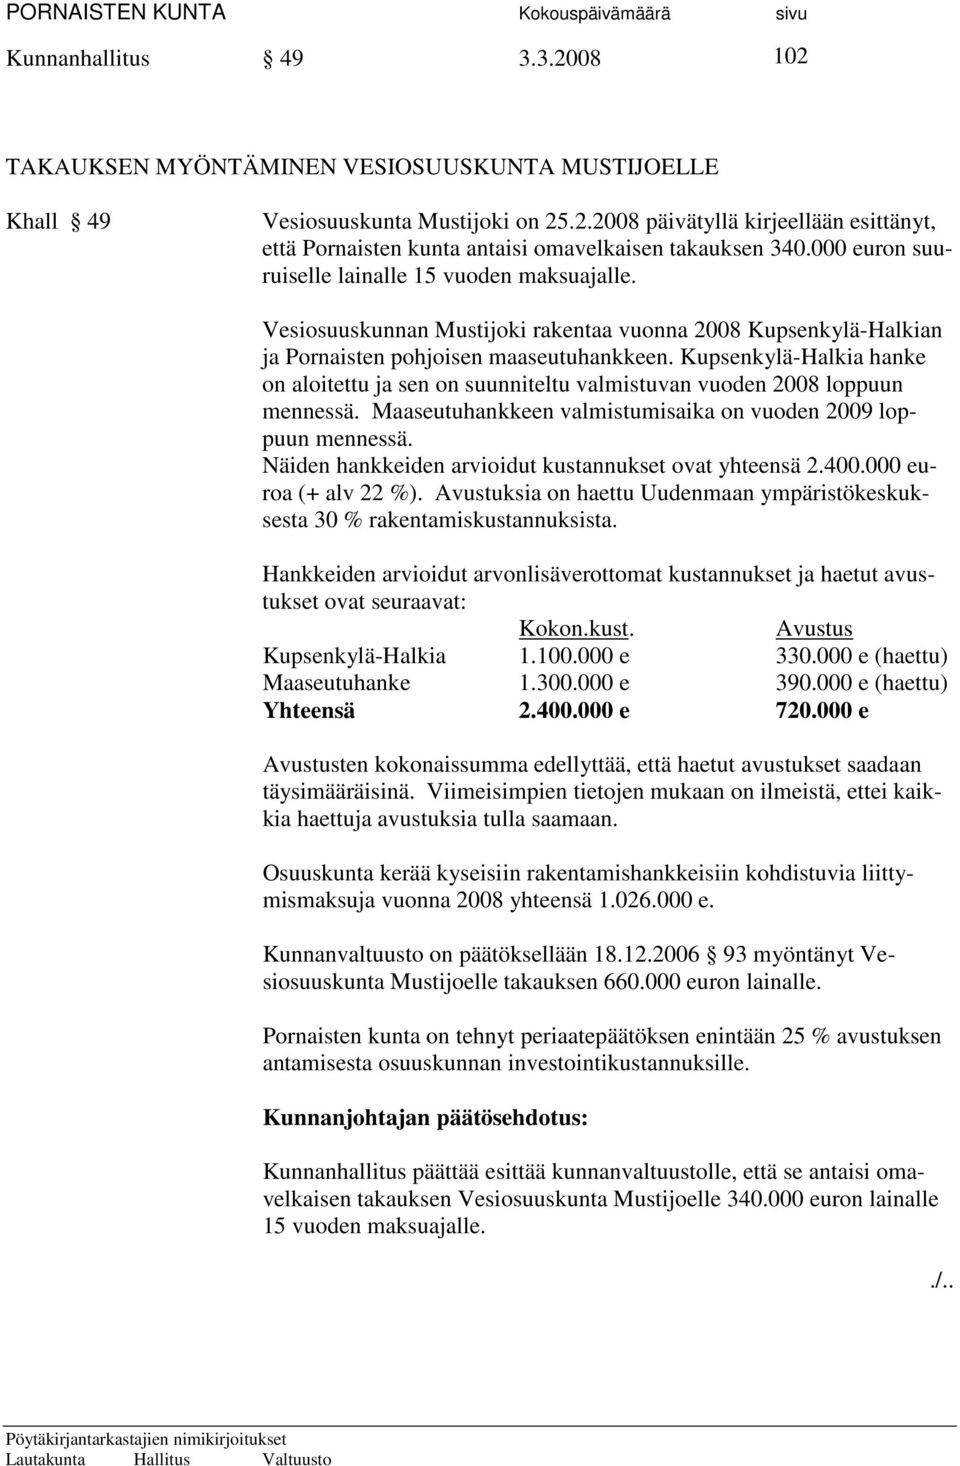 Kupsenkylä-Halkia hanke on aloitettu ja sen on suunniteltu valmistuvan vuoden 2008 loppuun mennessä. Maaseutuhankkeen valmistumisaika on vuoden 2009 loppuun mennessä.